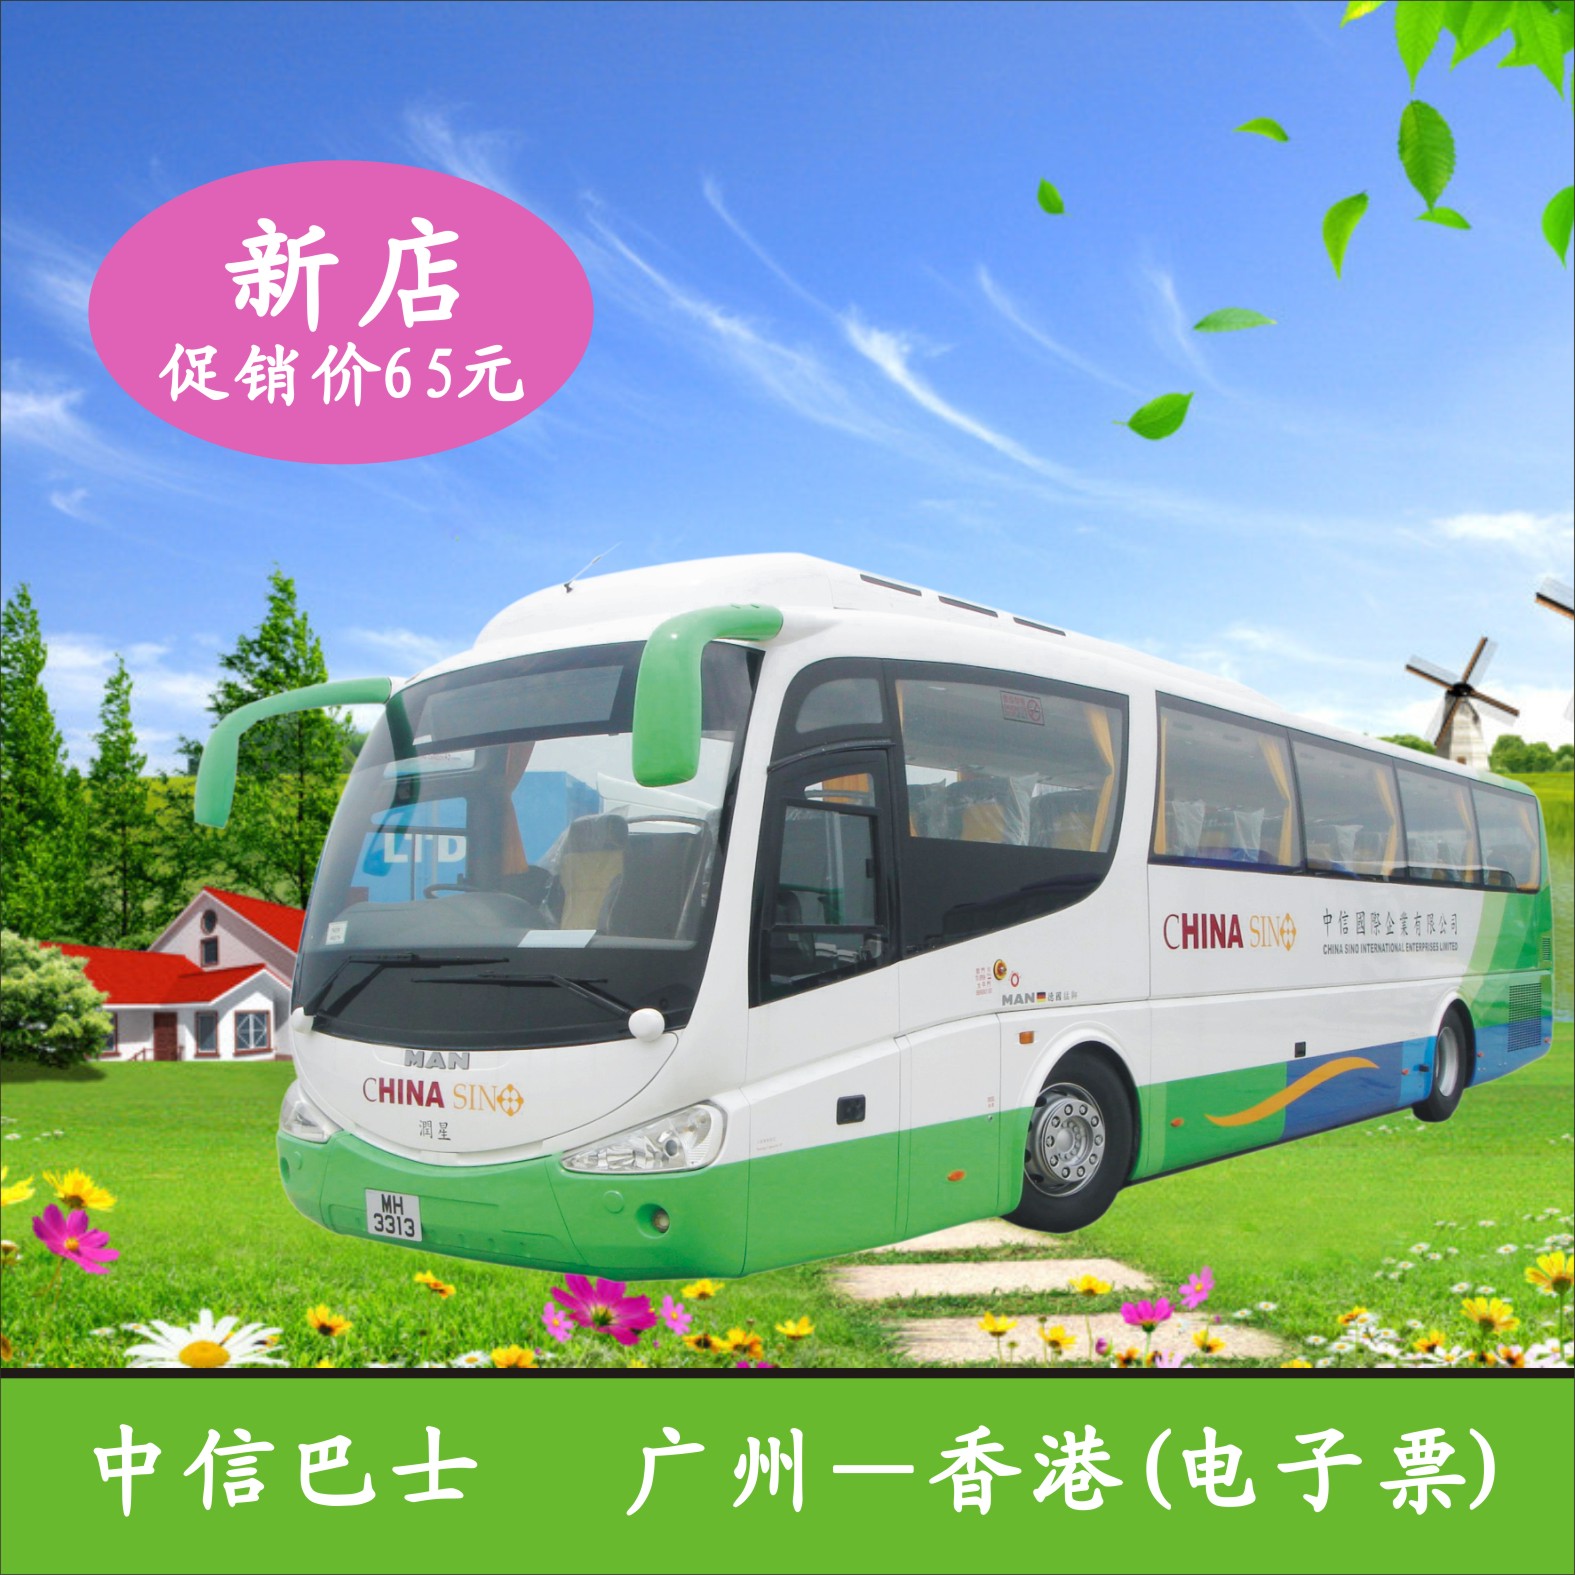 【中信巴士】广州至香港直通车 广州到香港大